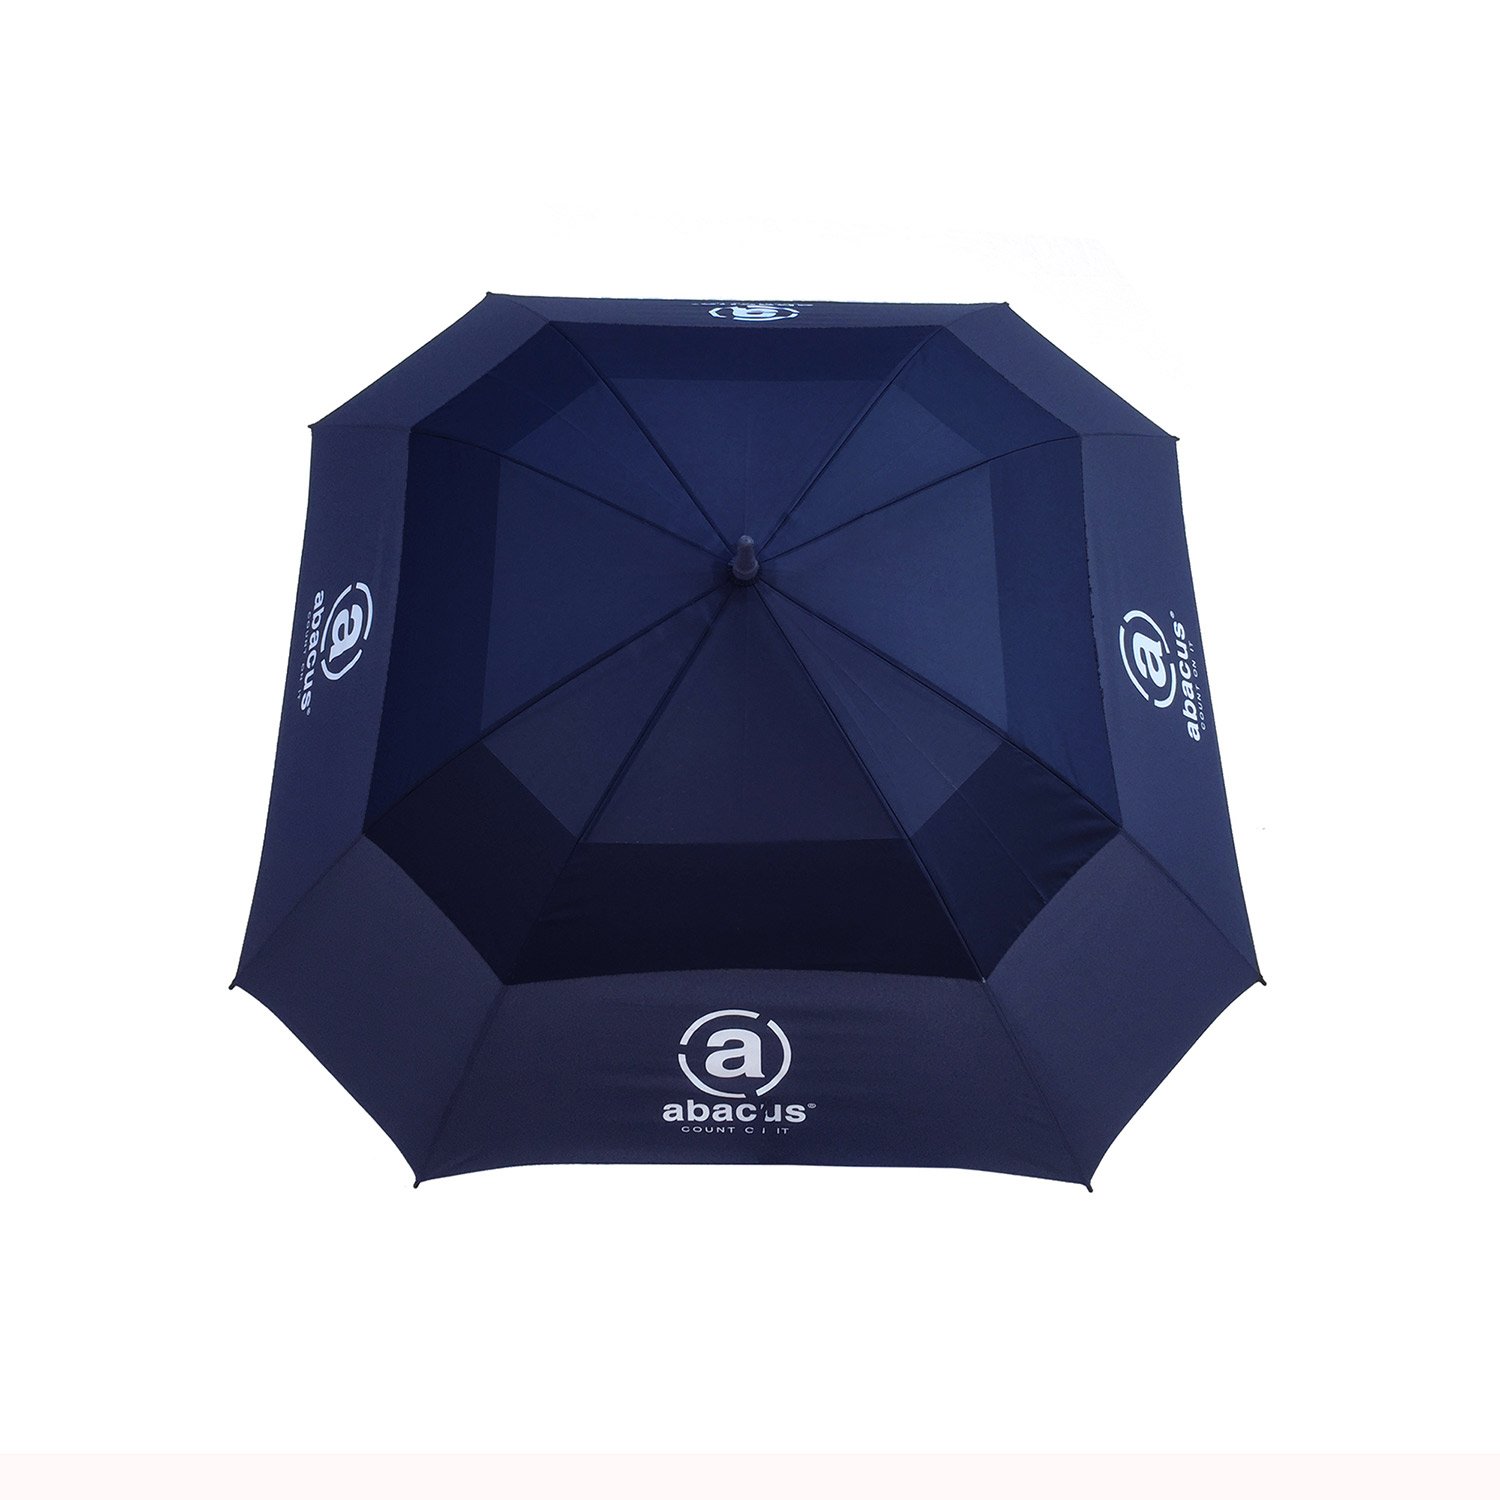 Square Umbrella Bleu